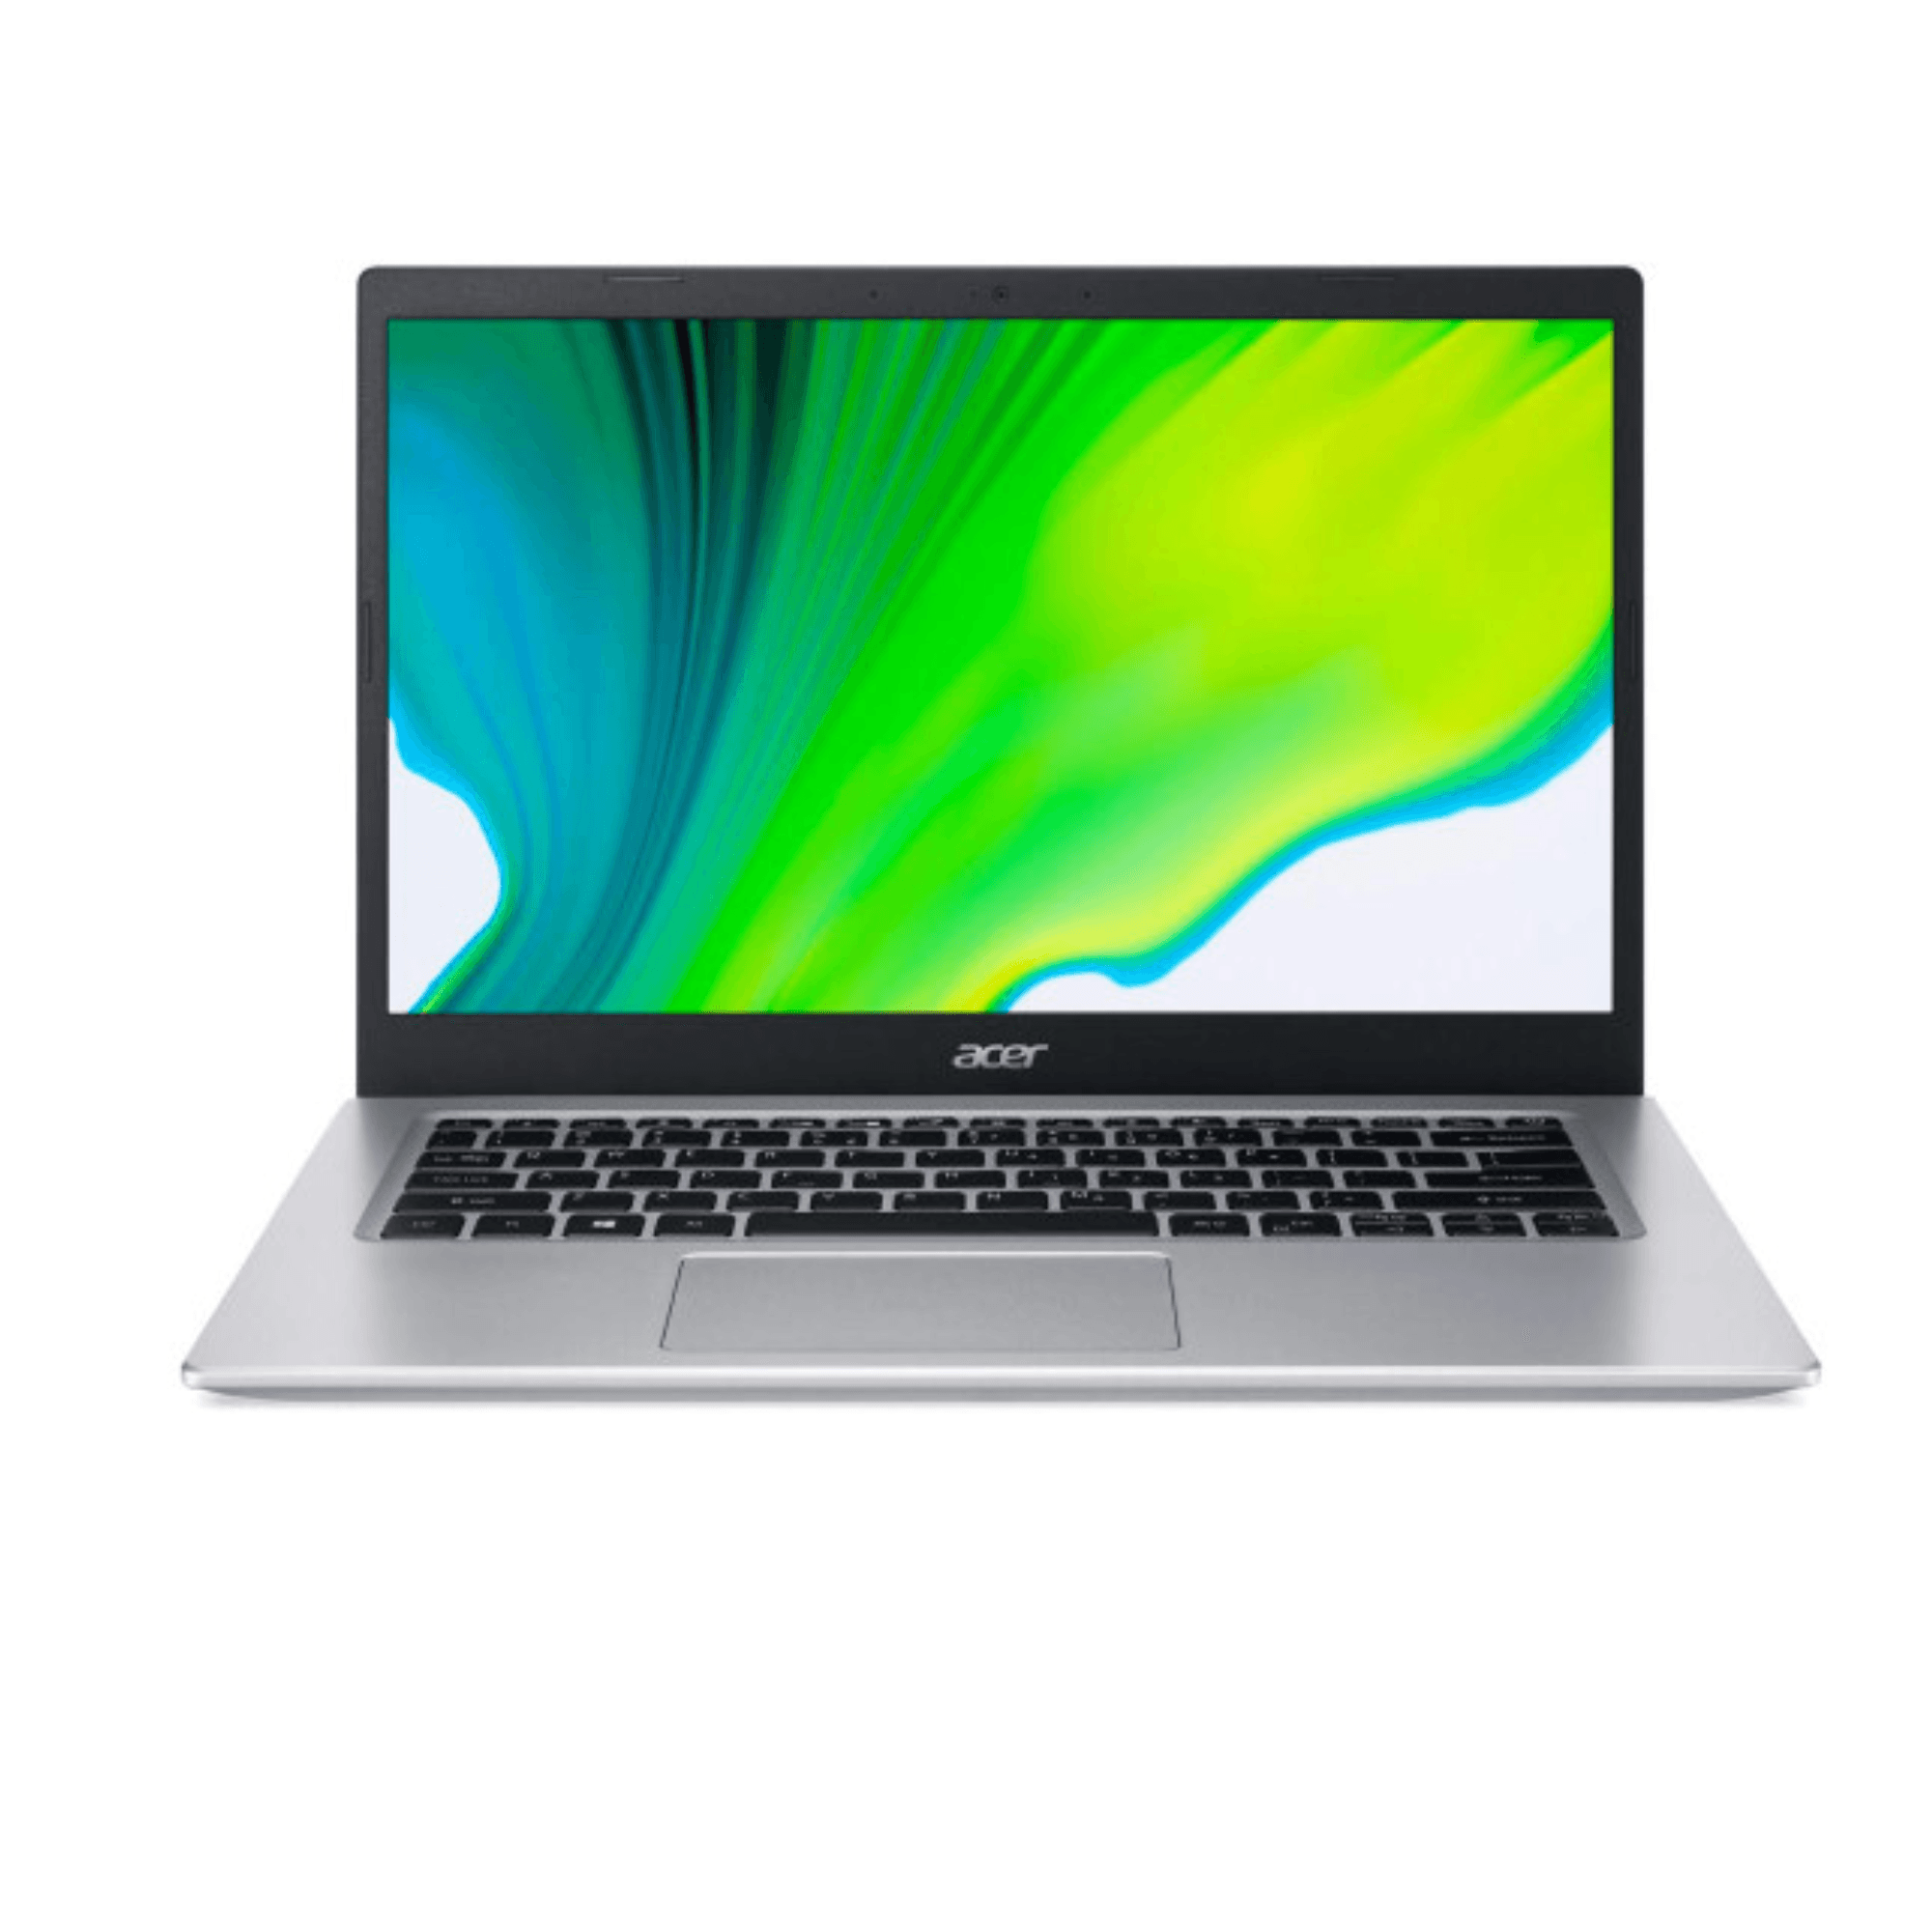 Acer Aspire 3 2022 (12th Gen i7-1255U, MX550, 8GB, 256GB, 1TB HDD, 15.6″ FHD)